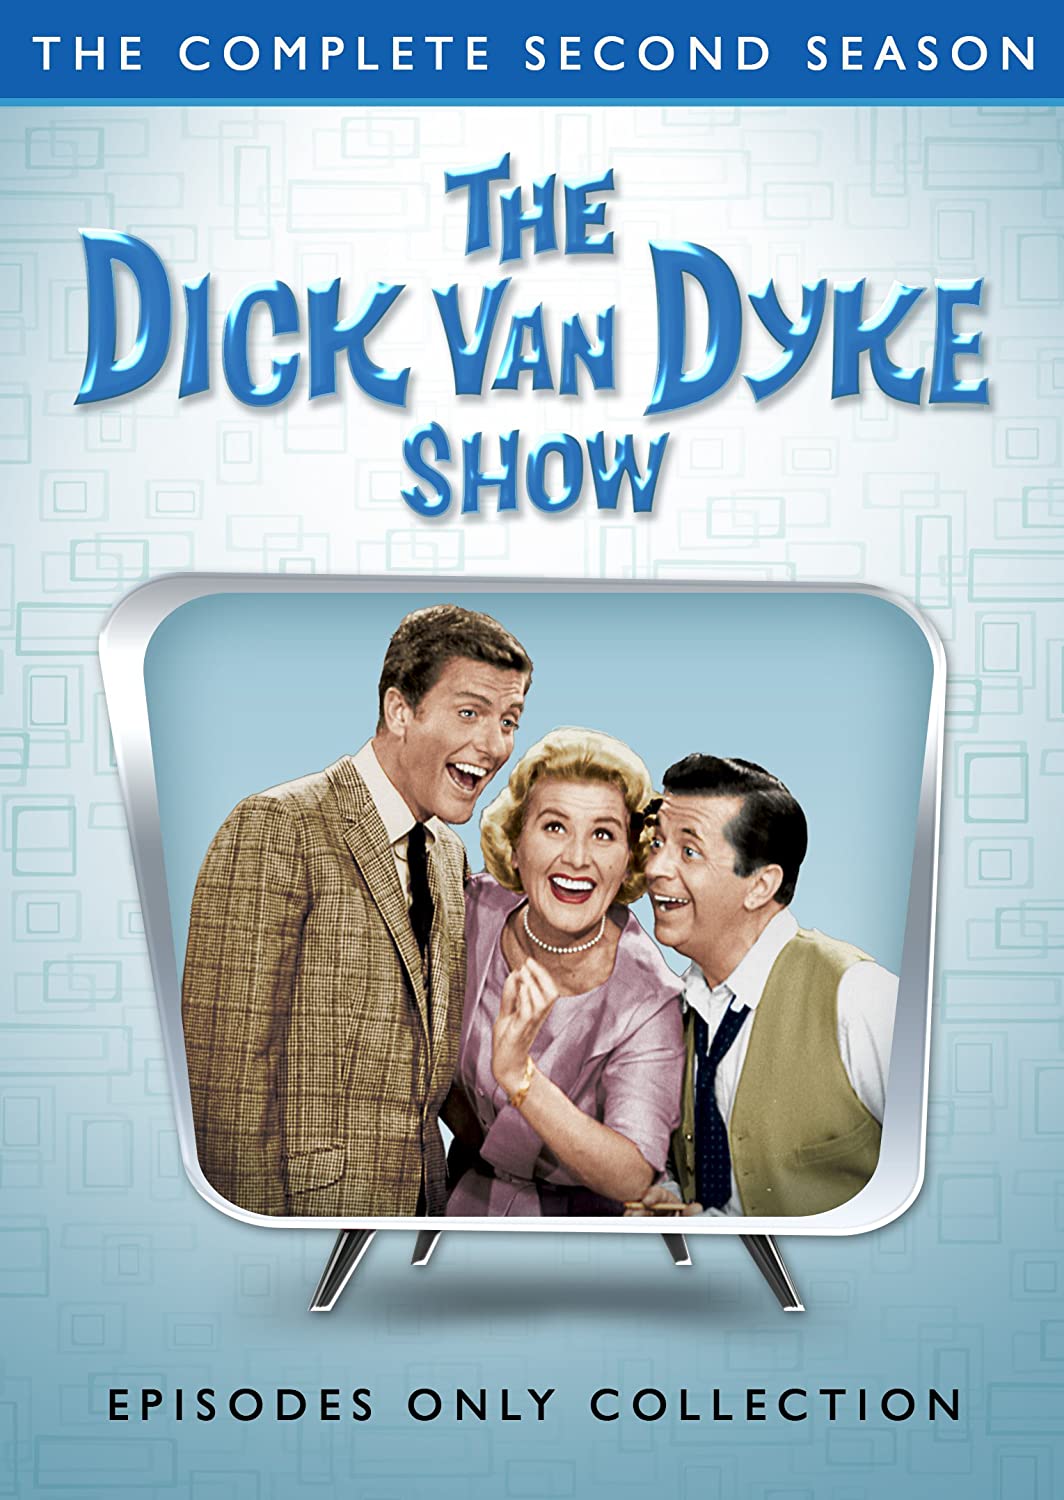 The dick van dyke show final episode date